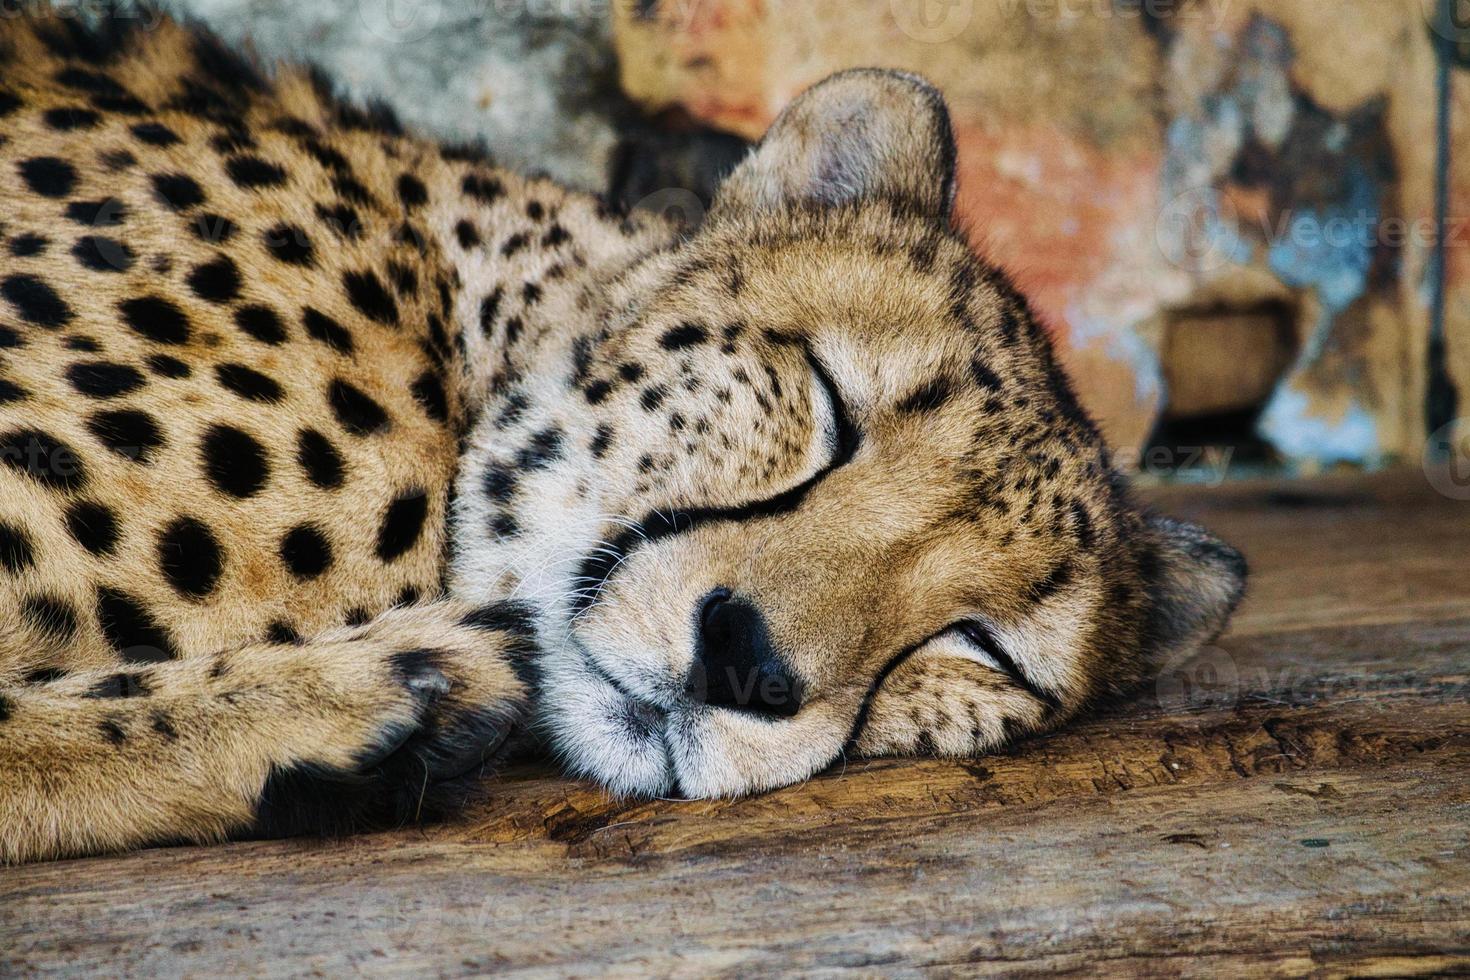 Gepard schläft. geflecktes Fell. Die große Katze ist ein Raubtier. ruhendes Säugetier. Jäger foto